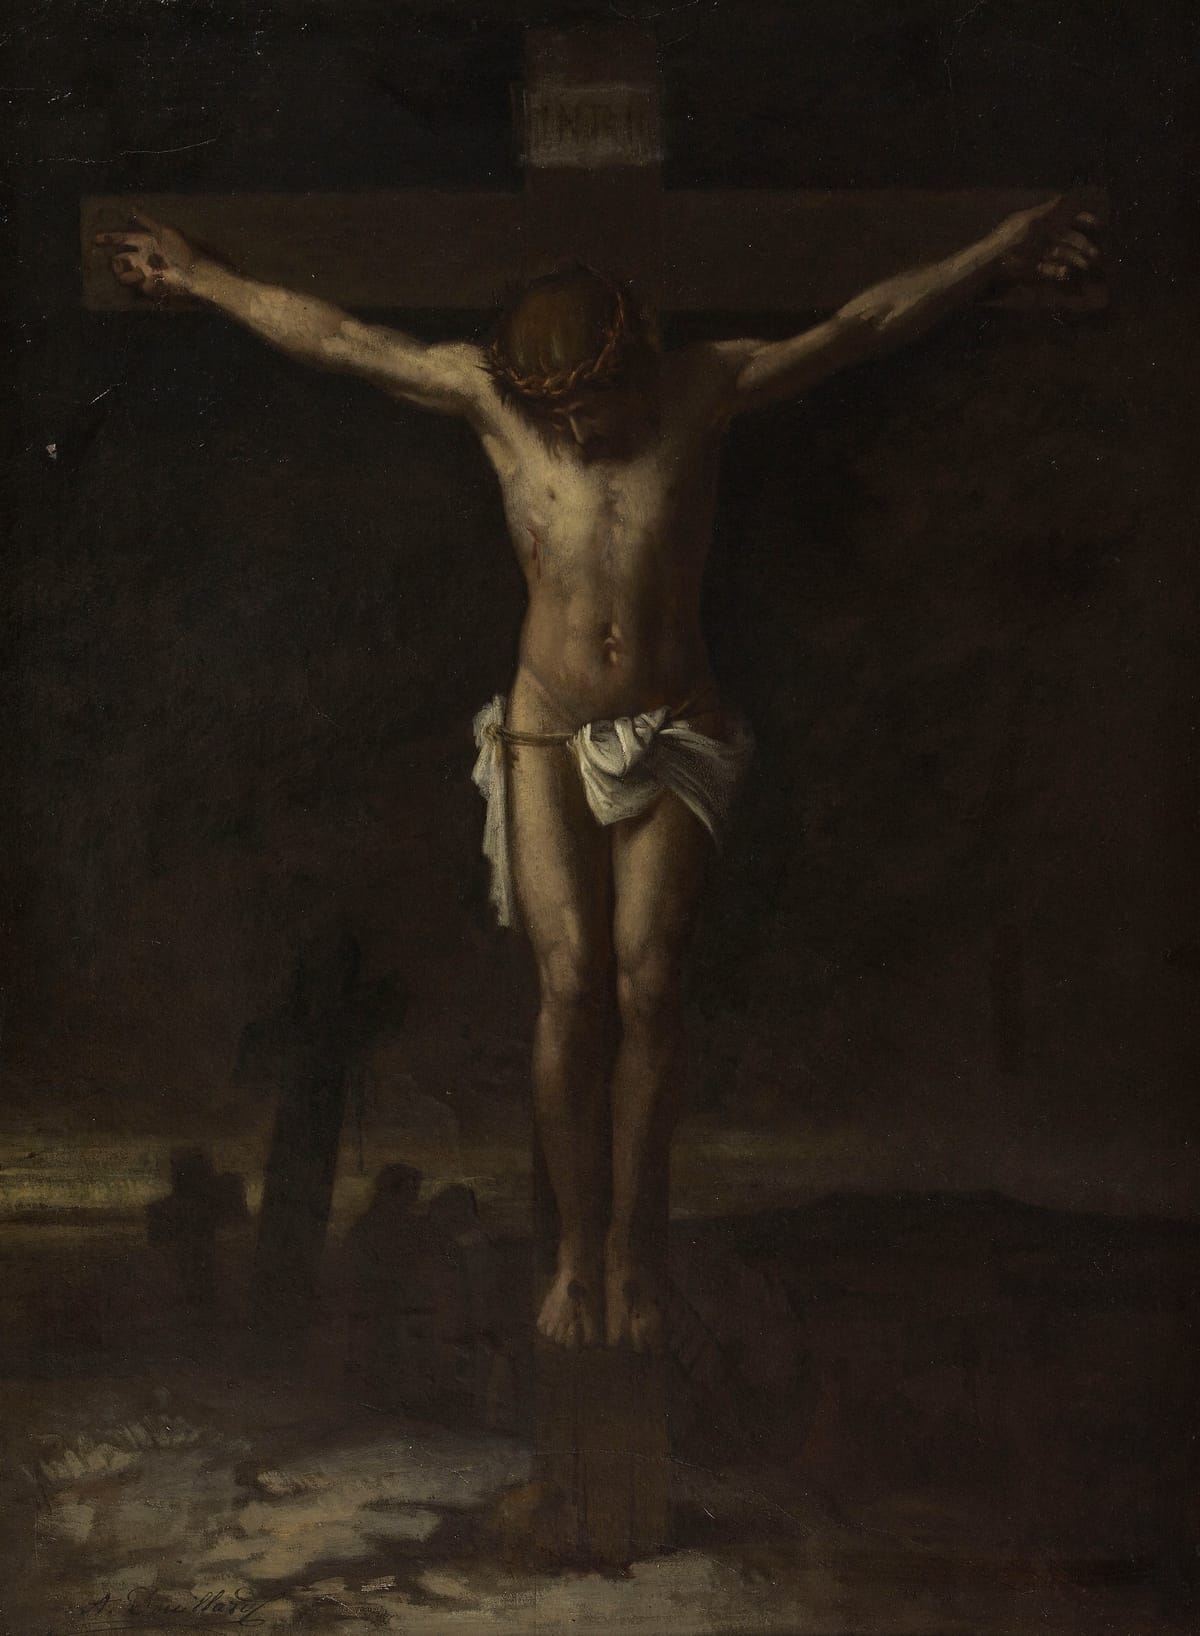 Le Christ en croix (The Christ on the cross) (1871) by Alexis Marie Louis Douillard - Public Domain Catholic Painting